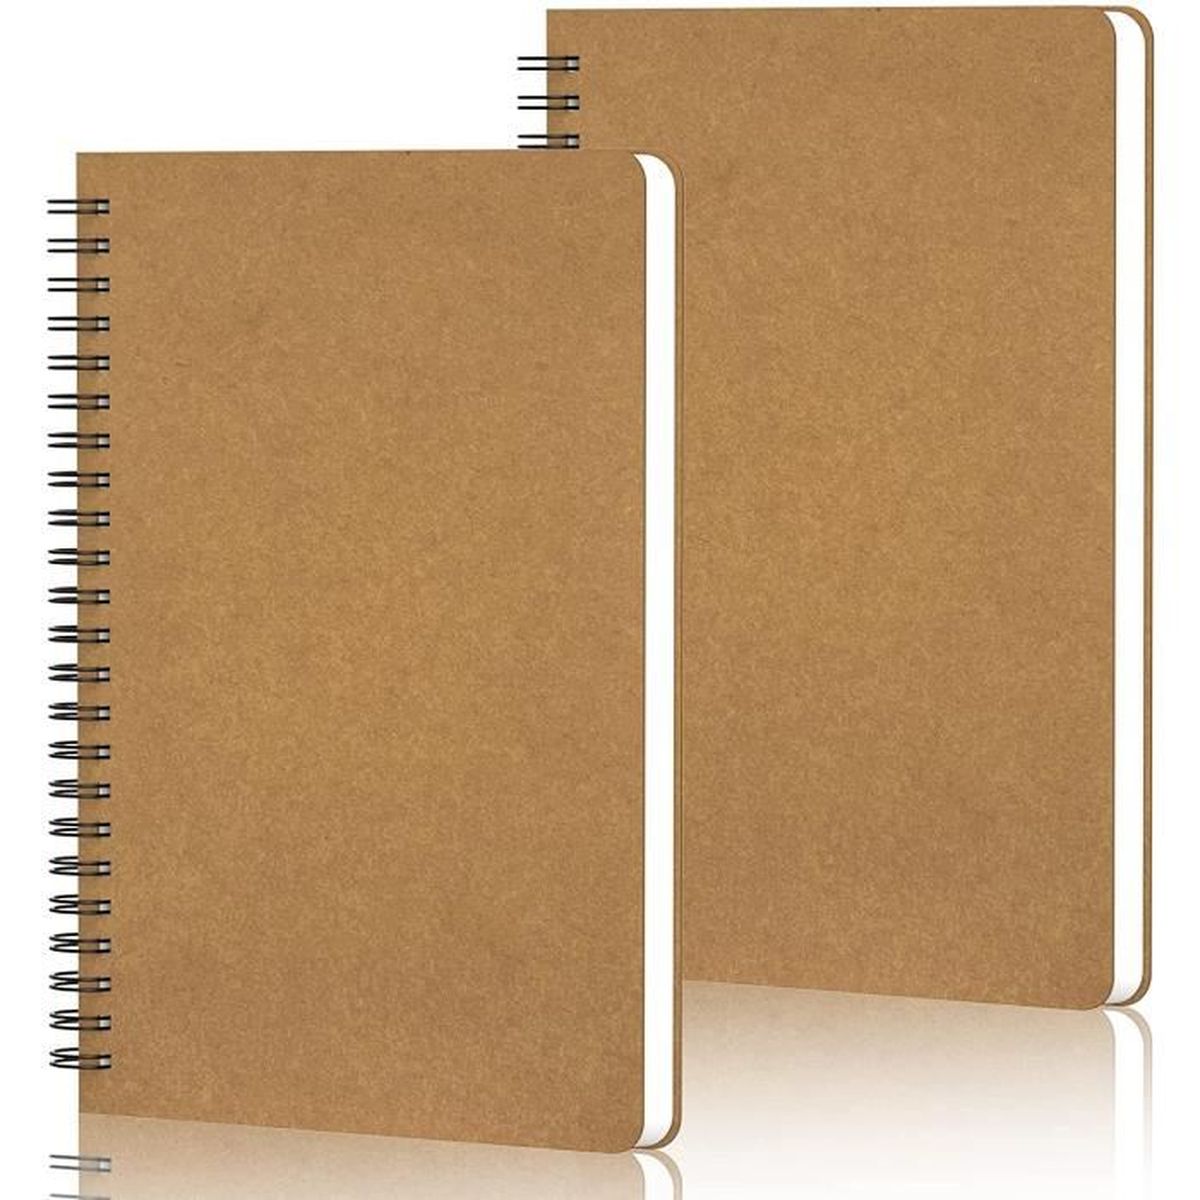 poche arrière Carnet/Journal ligné reliure solide à deux fils carnet/journal à spirale à règle 8,5x 6,5 Journal ligné avec couverture rigide et papier épais de qualité supérieure 